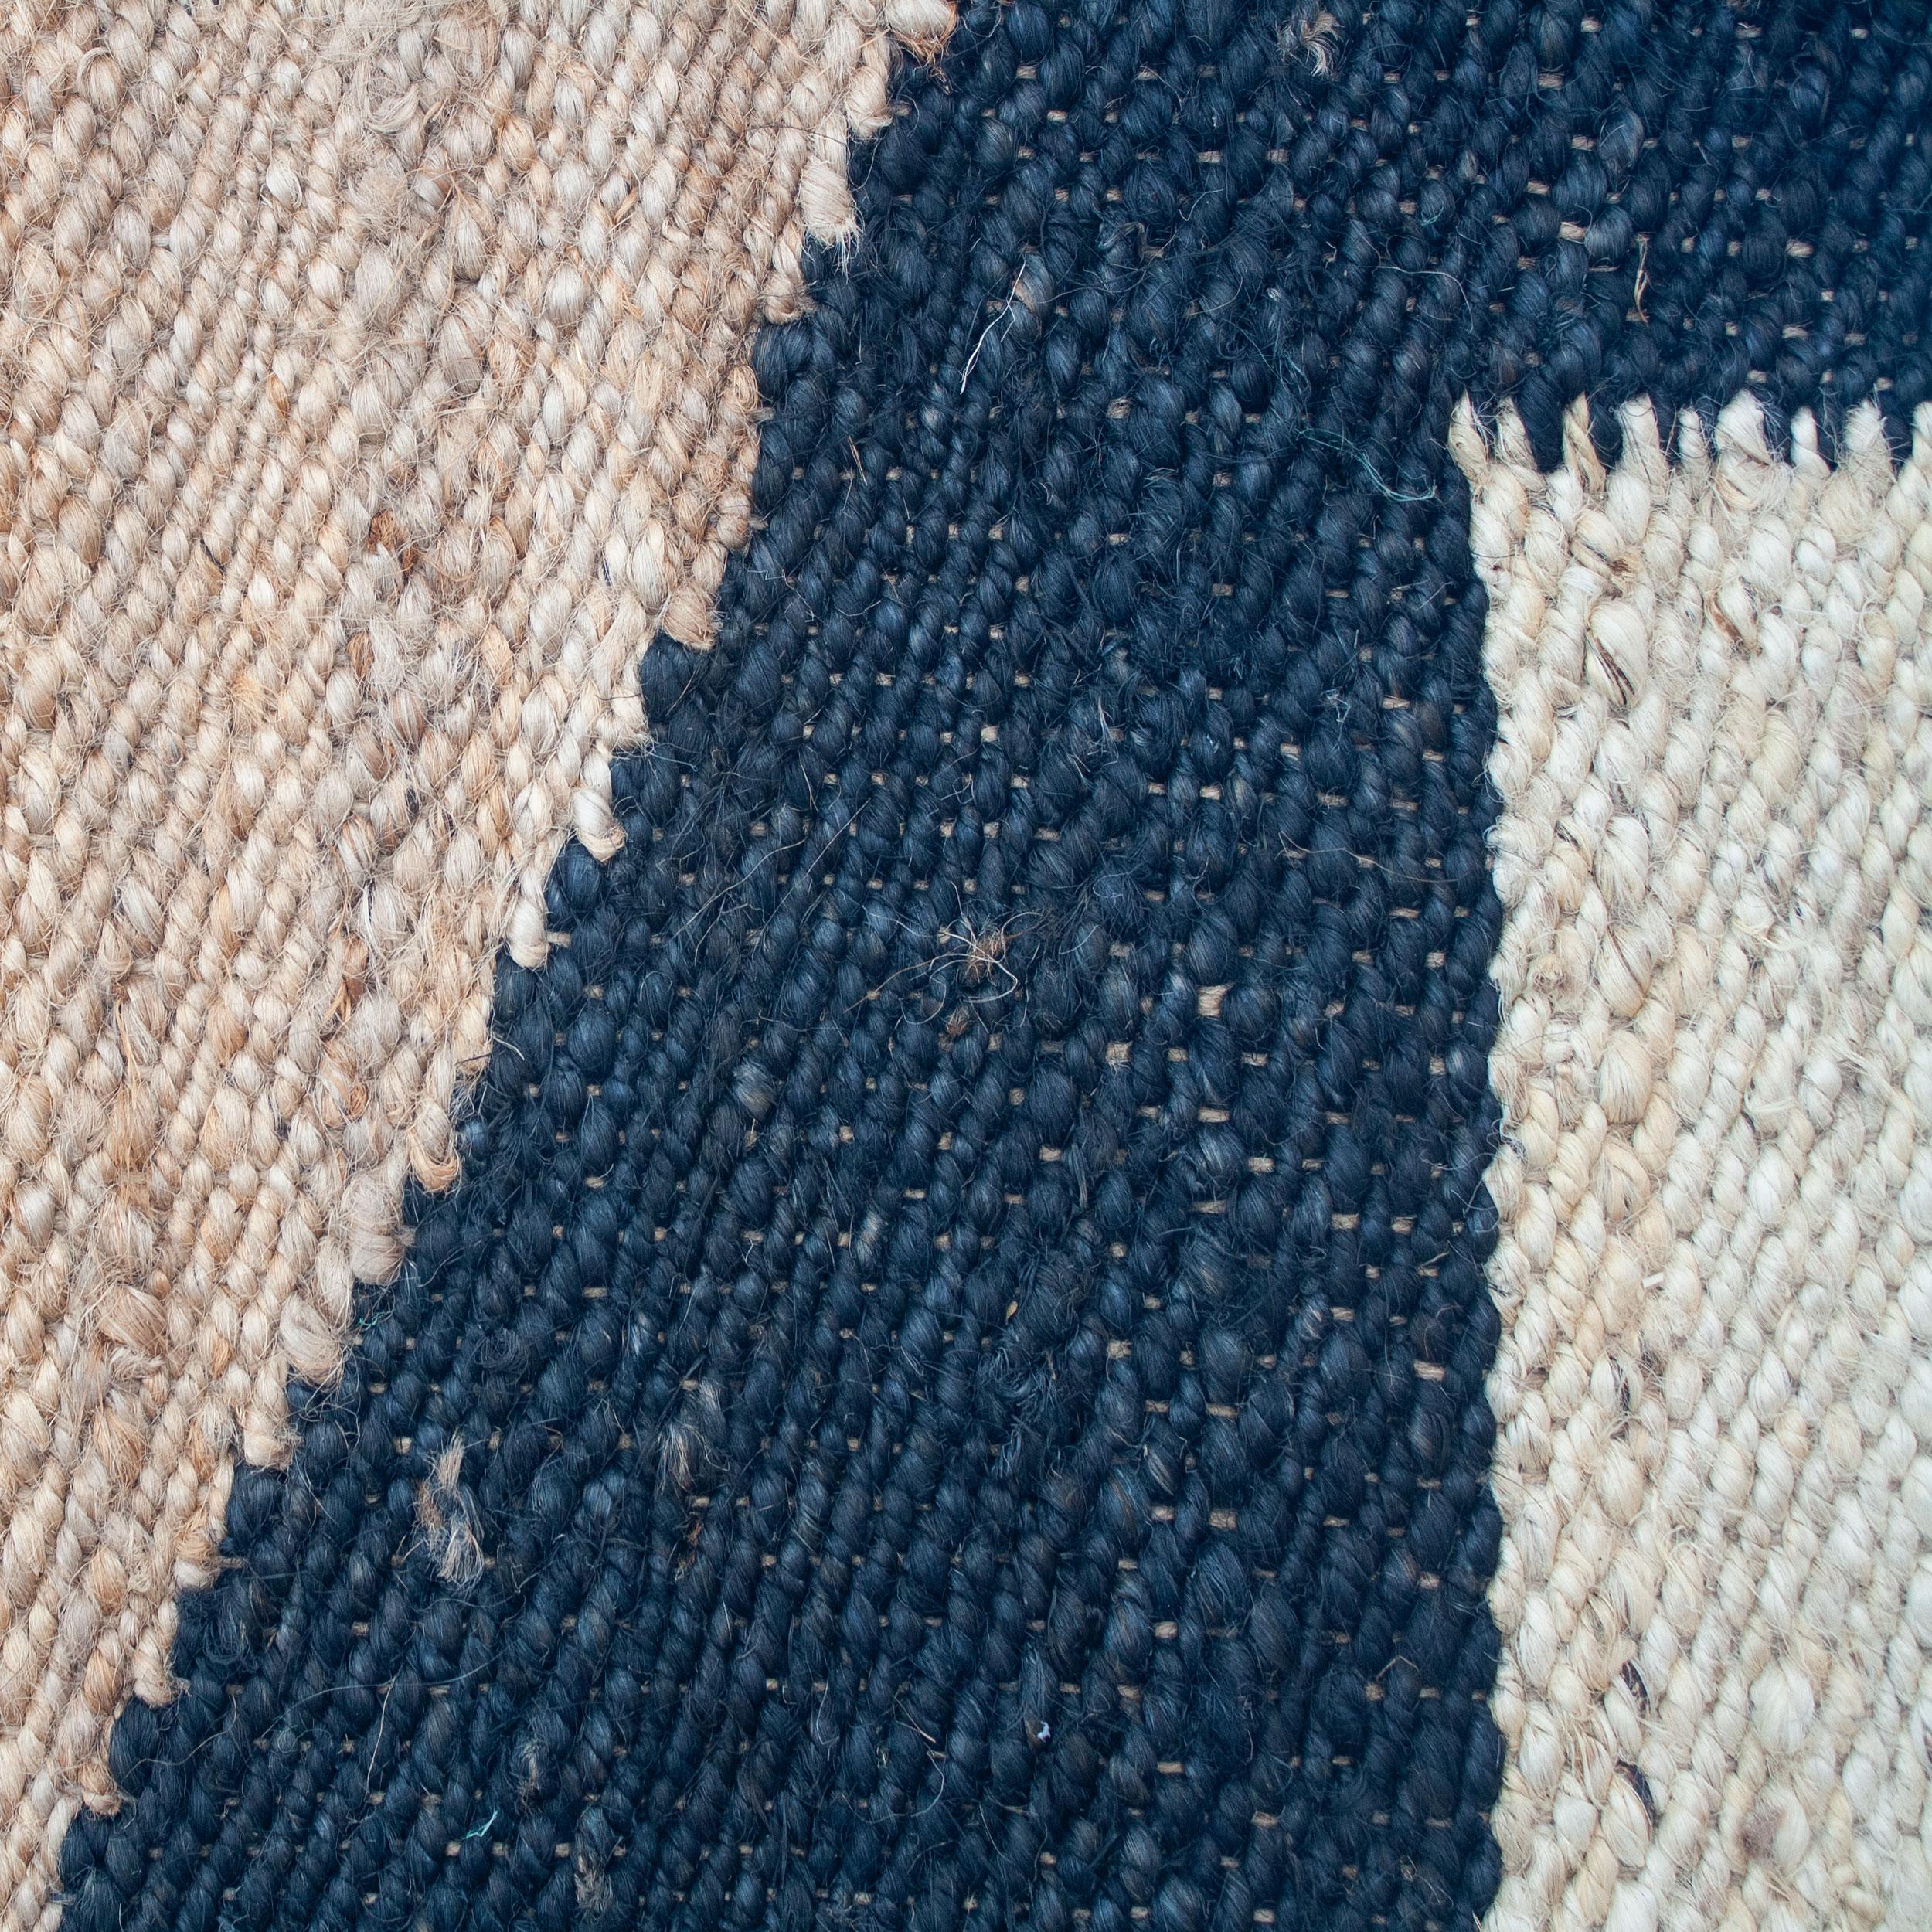 Dieser Jute-Teppich wurde von Kunsthandwerkern in Rajasthan, Indien, unter Verwendung einer traditionellen Webtechnik, die in dieser Region heimisch ist, ethisch von Hand aus feinsten Jute-Garnen gewebt.

Der Kauf dieses handgefertigten Teppichs